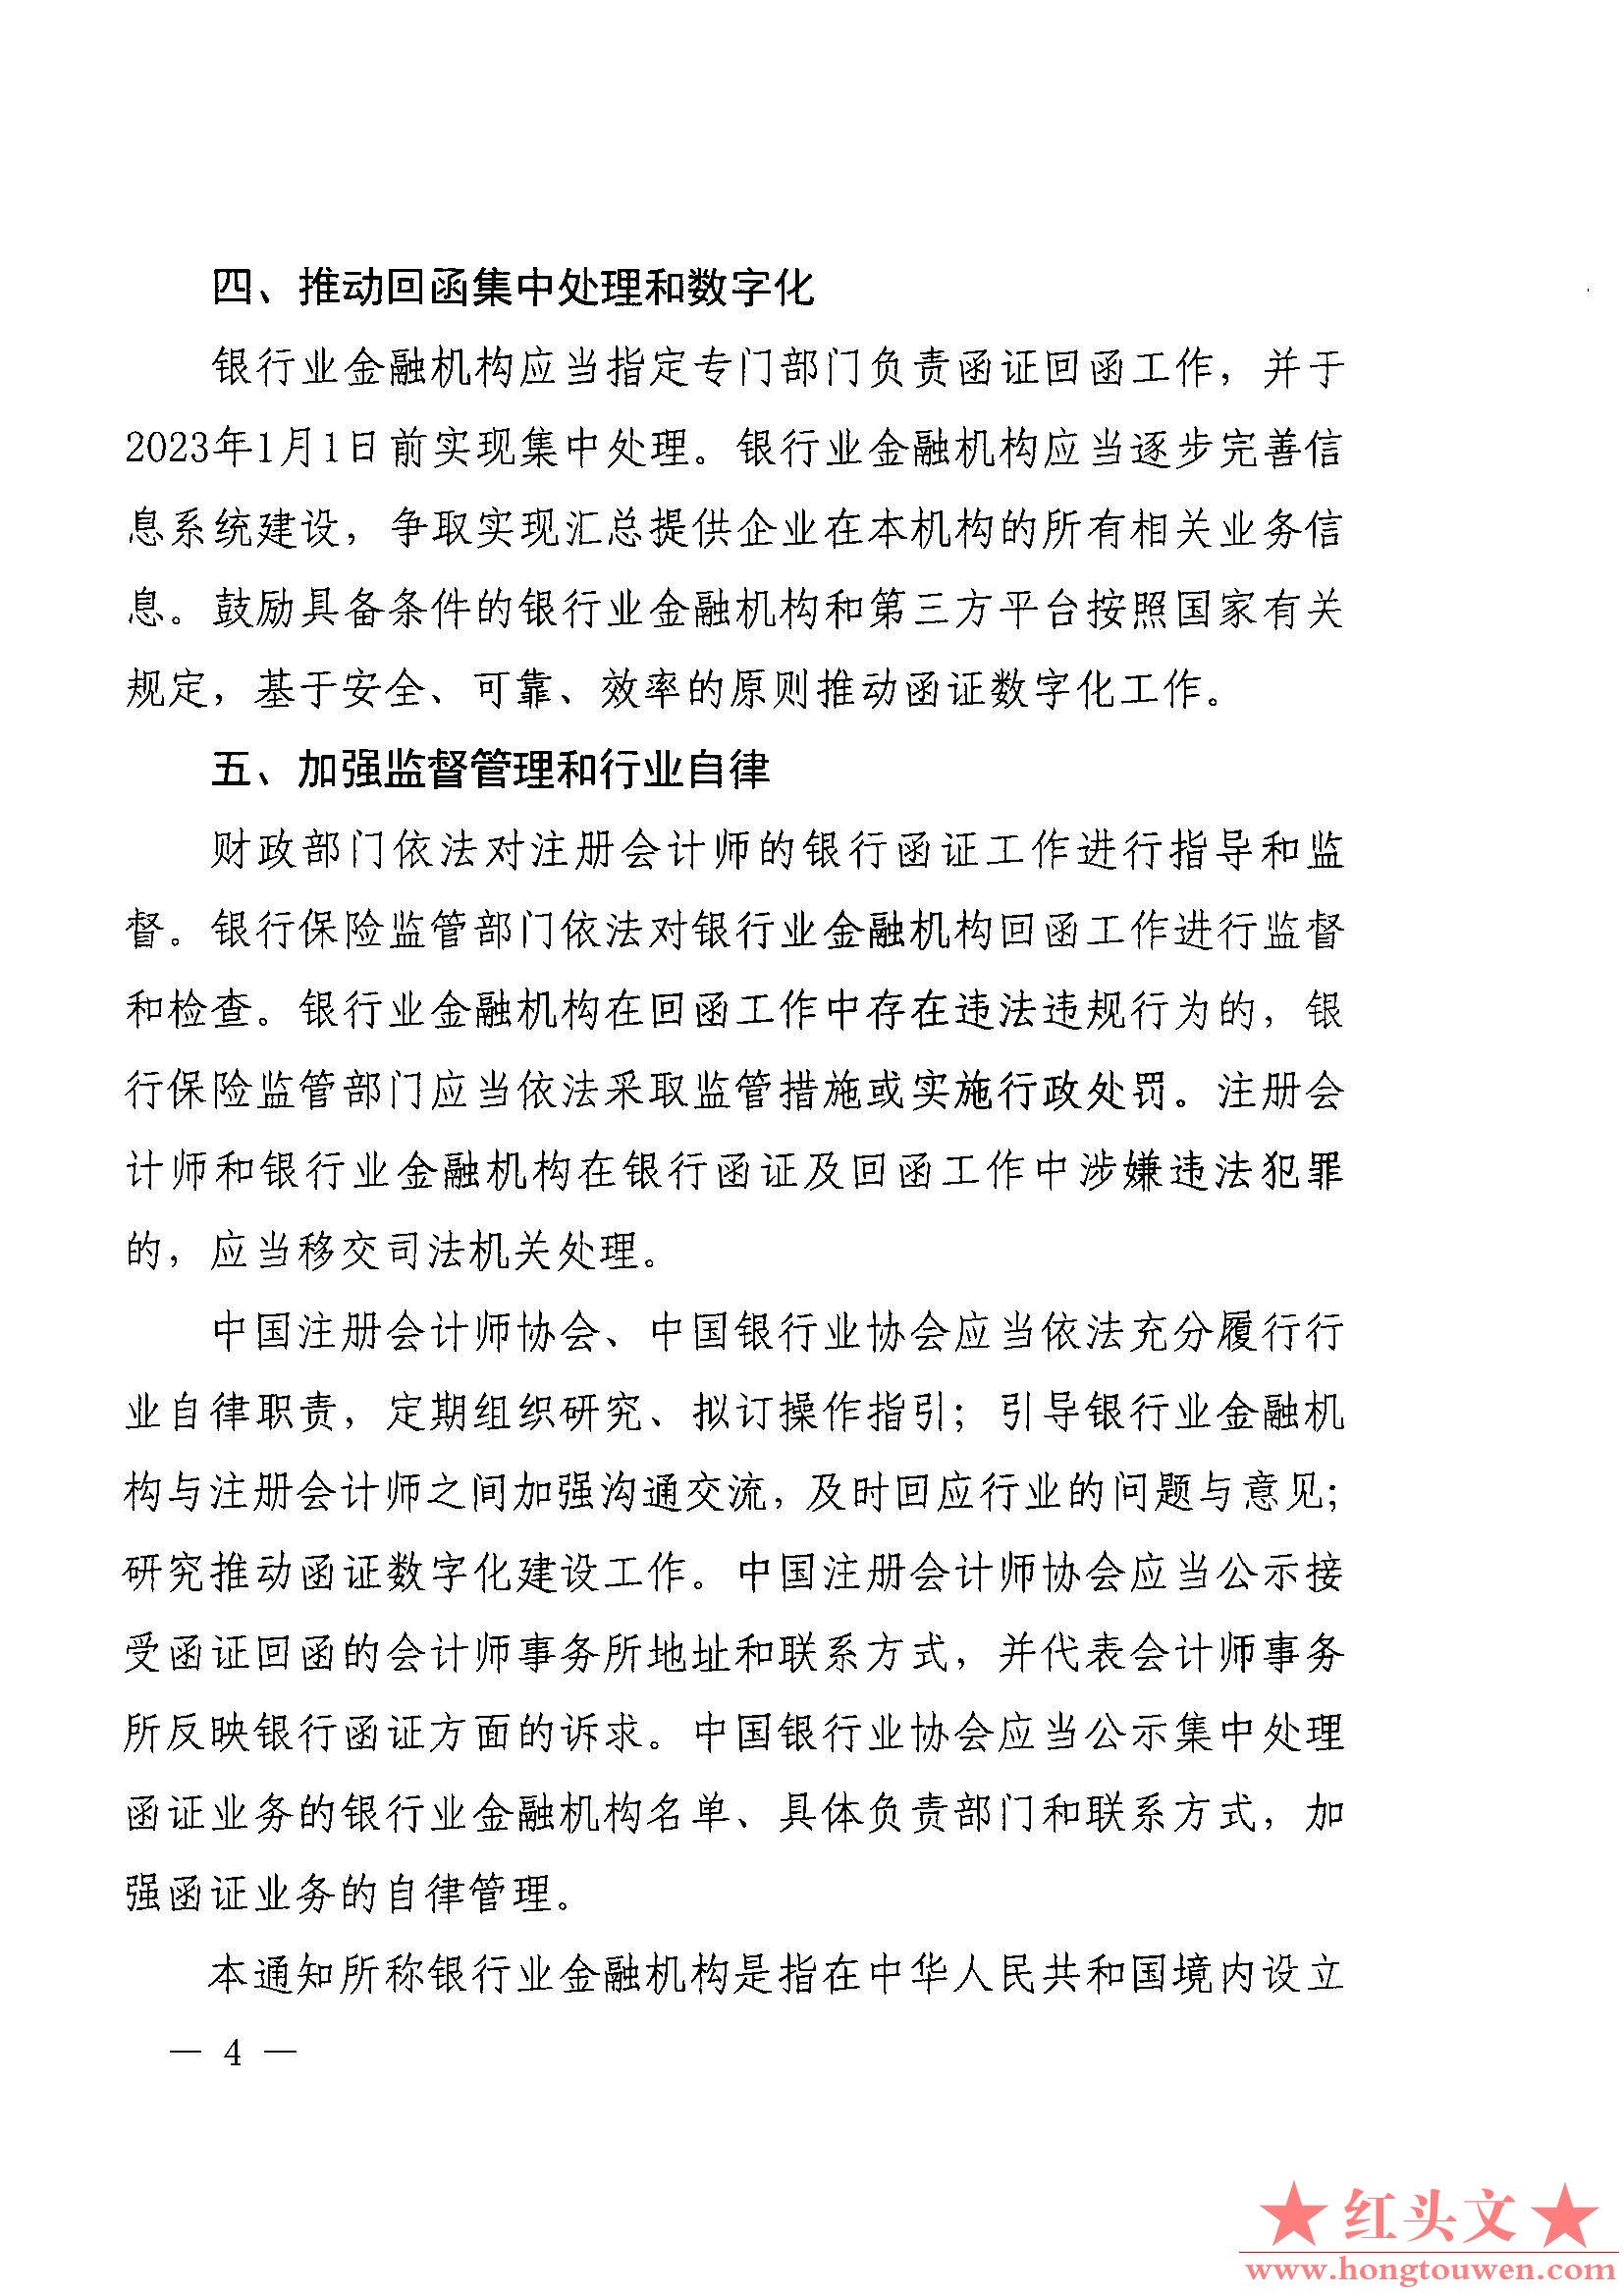 财会[2020]12号-财政部 中国银保监会关于进一步规范银行函证及回函工作的通知_页面_4.jpg